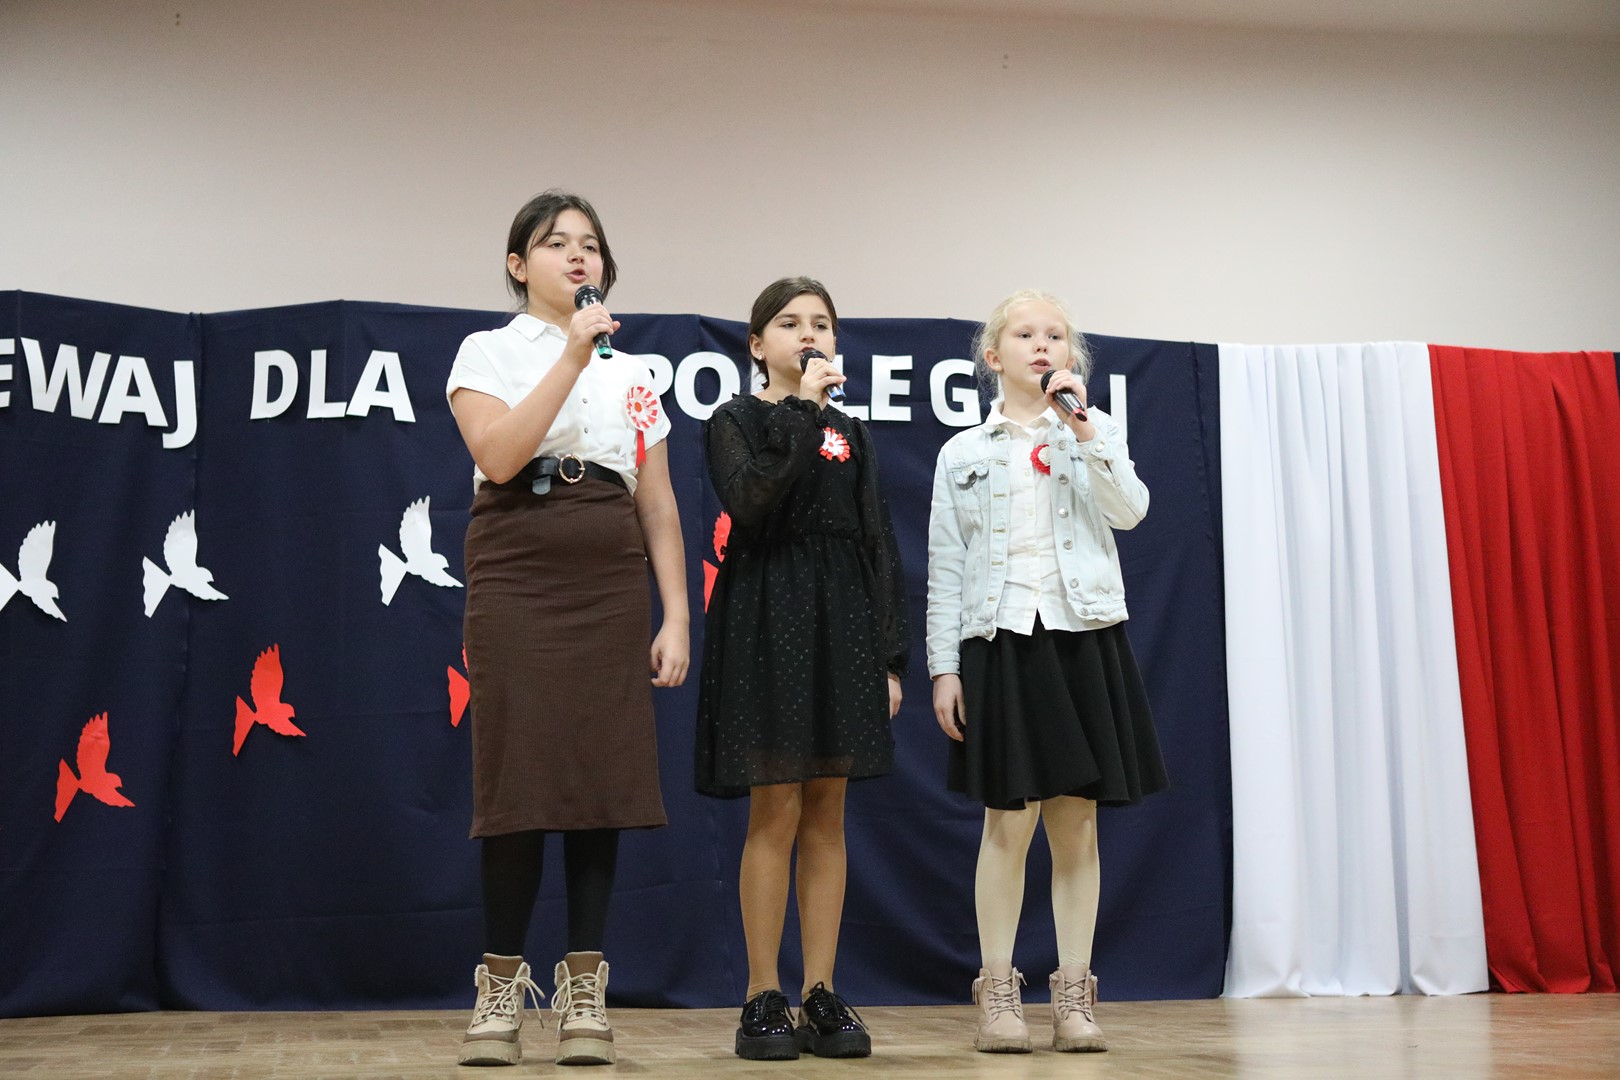 Uczestniczki konkursu podczas występu wokalnego - trzy dziewczynki.